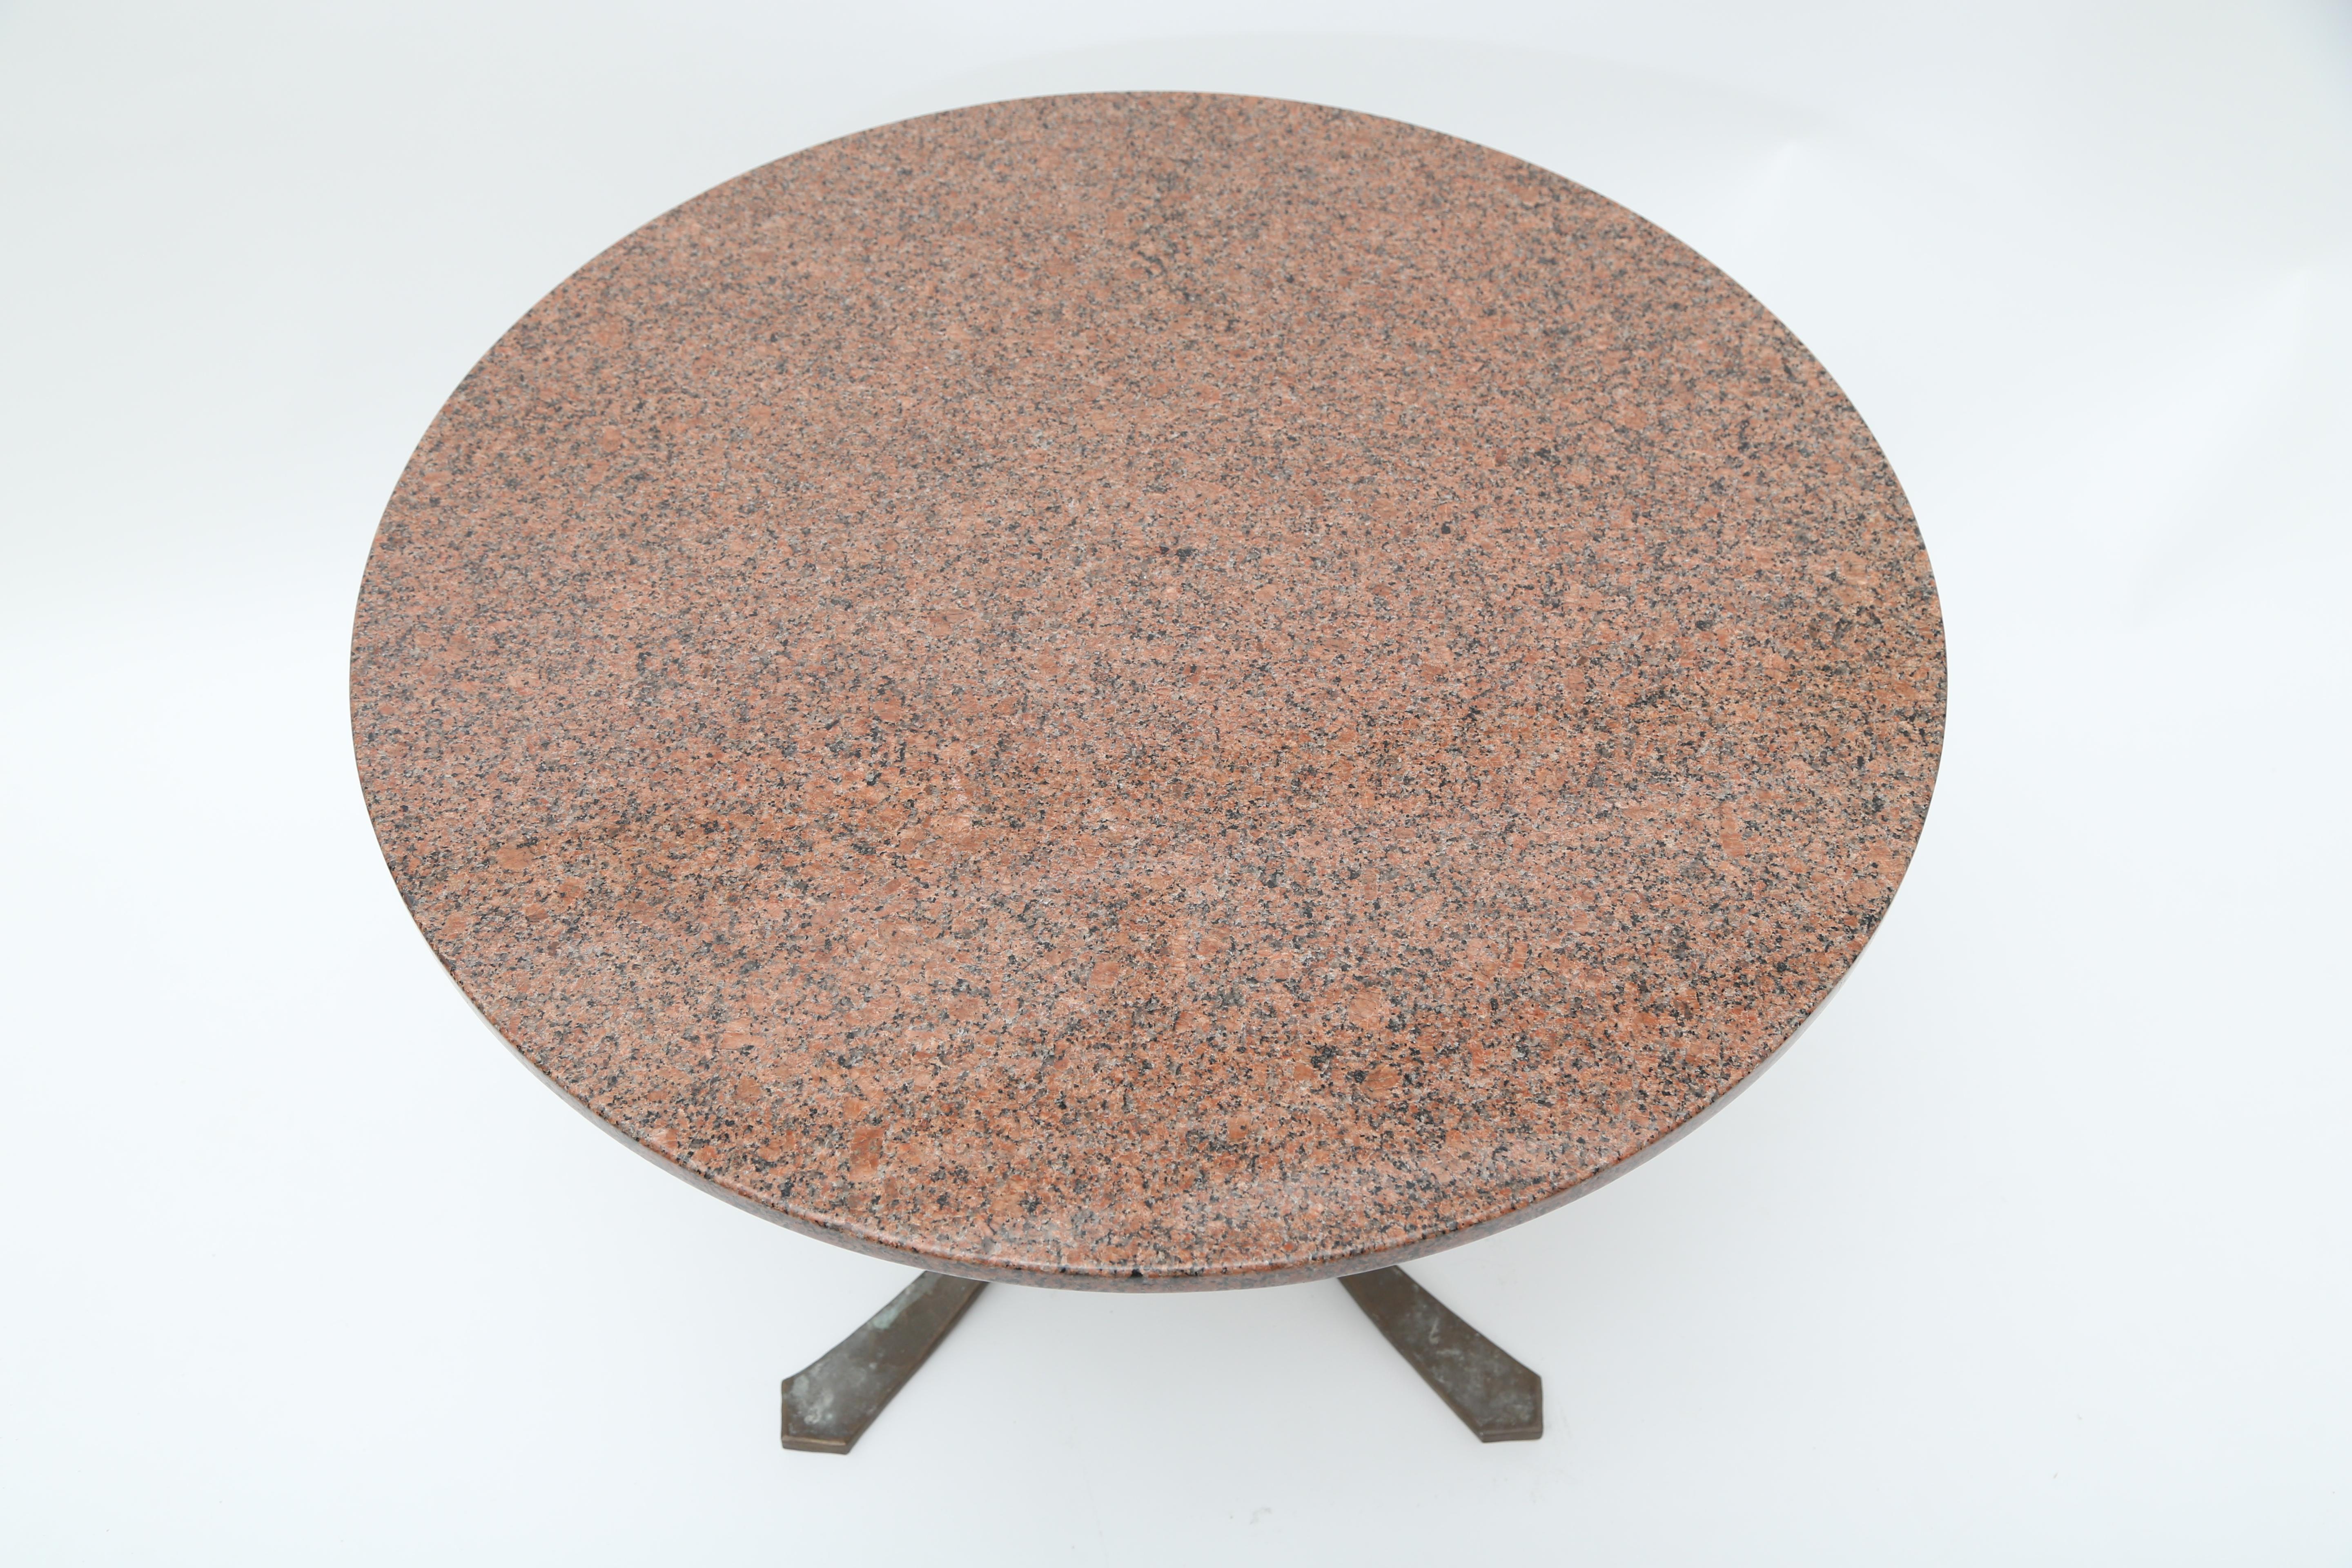 Table en bronze moulé et granit.
Probablement d'origine française.
   